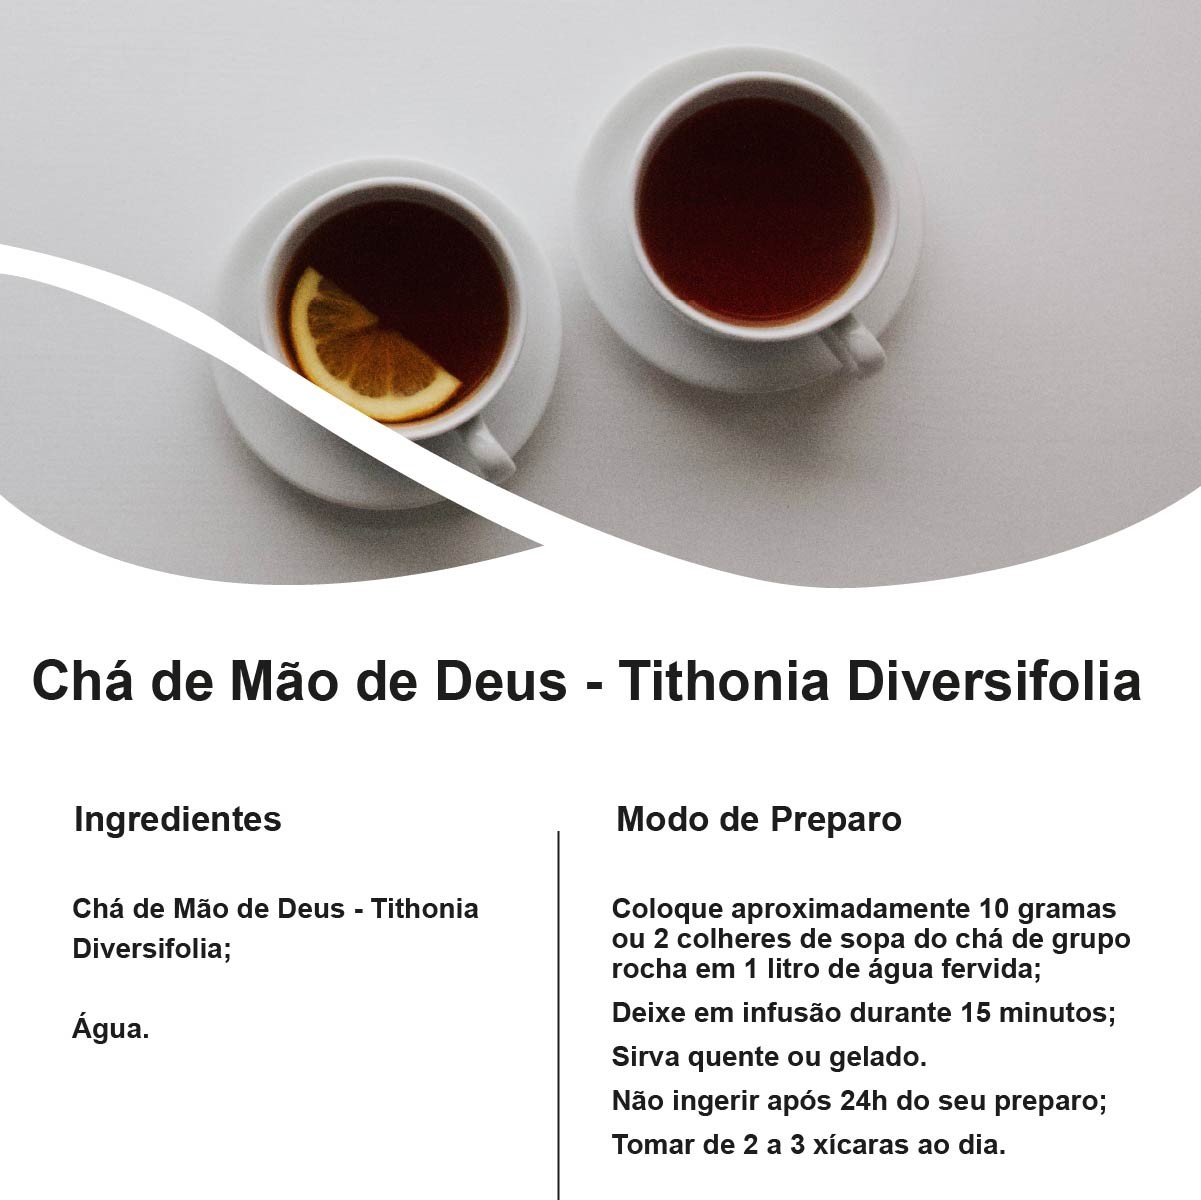 Chá de Mão de Deus - Tithonia Diversifolia – 100g